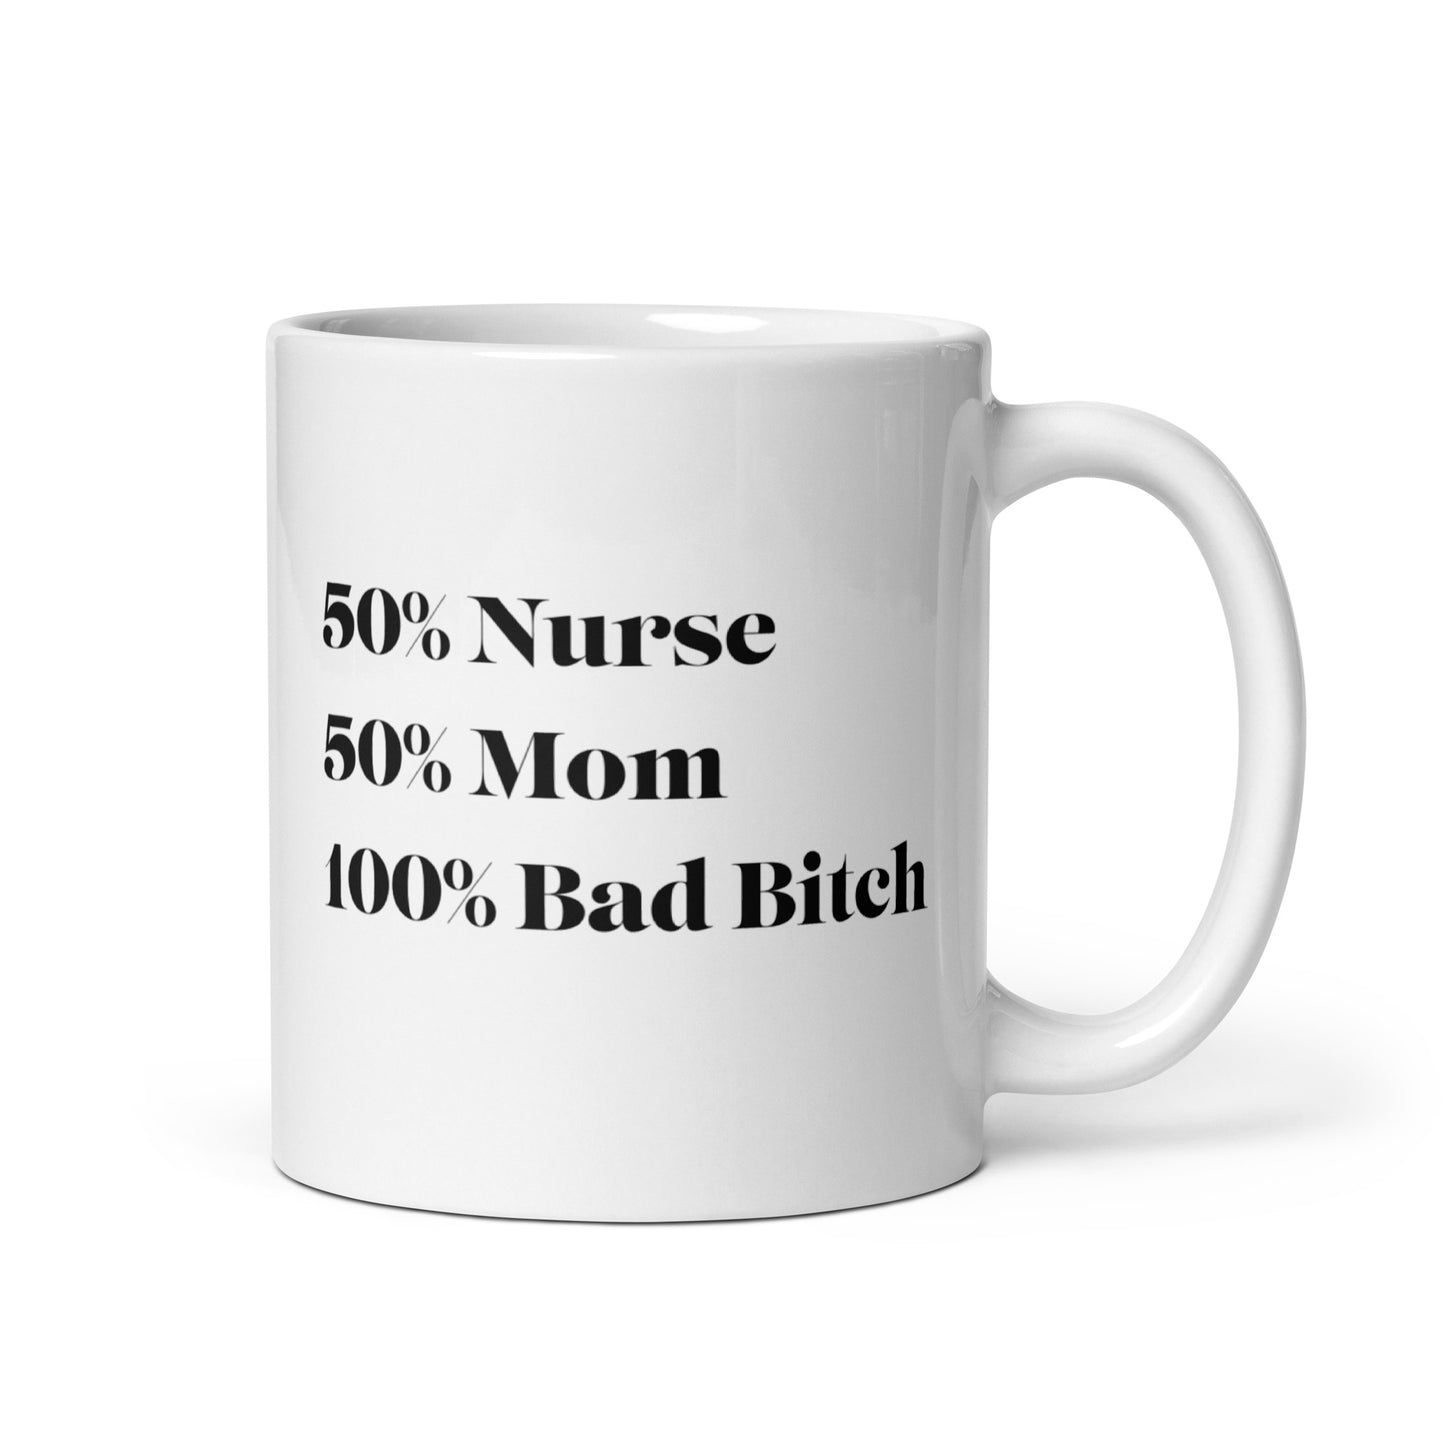 100% Bad Bitch Mug